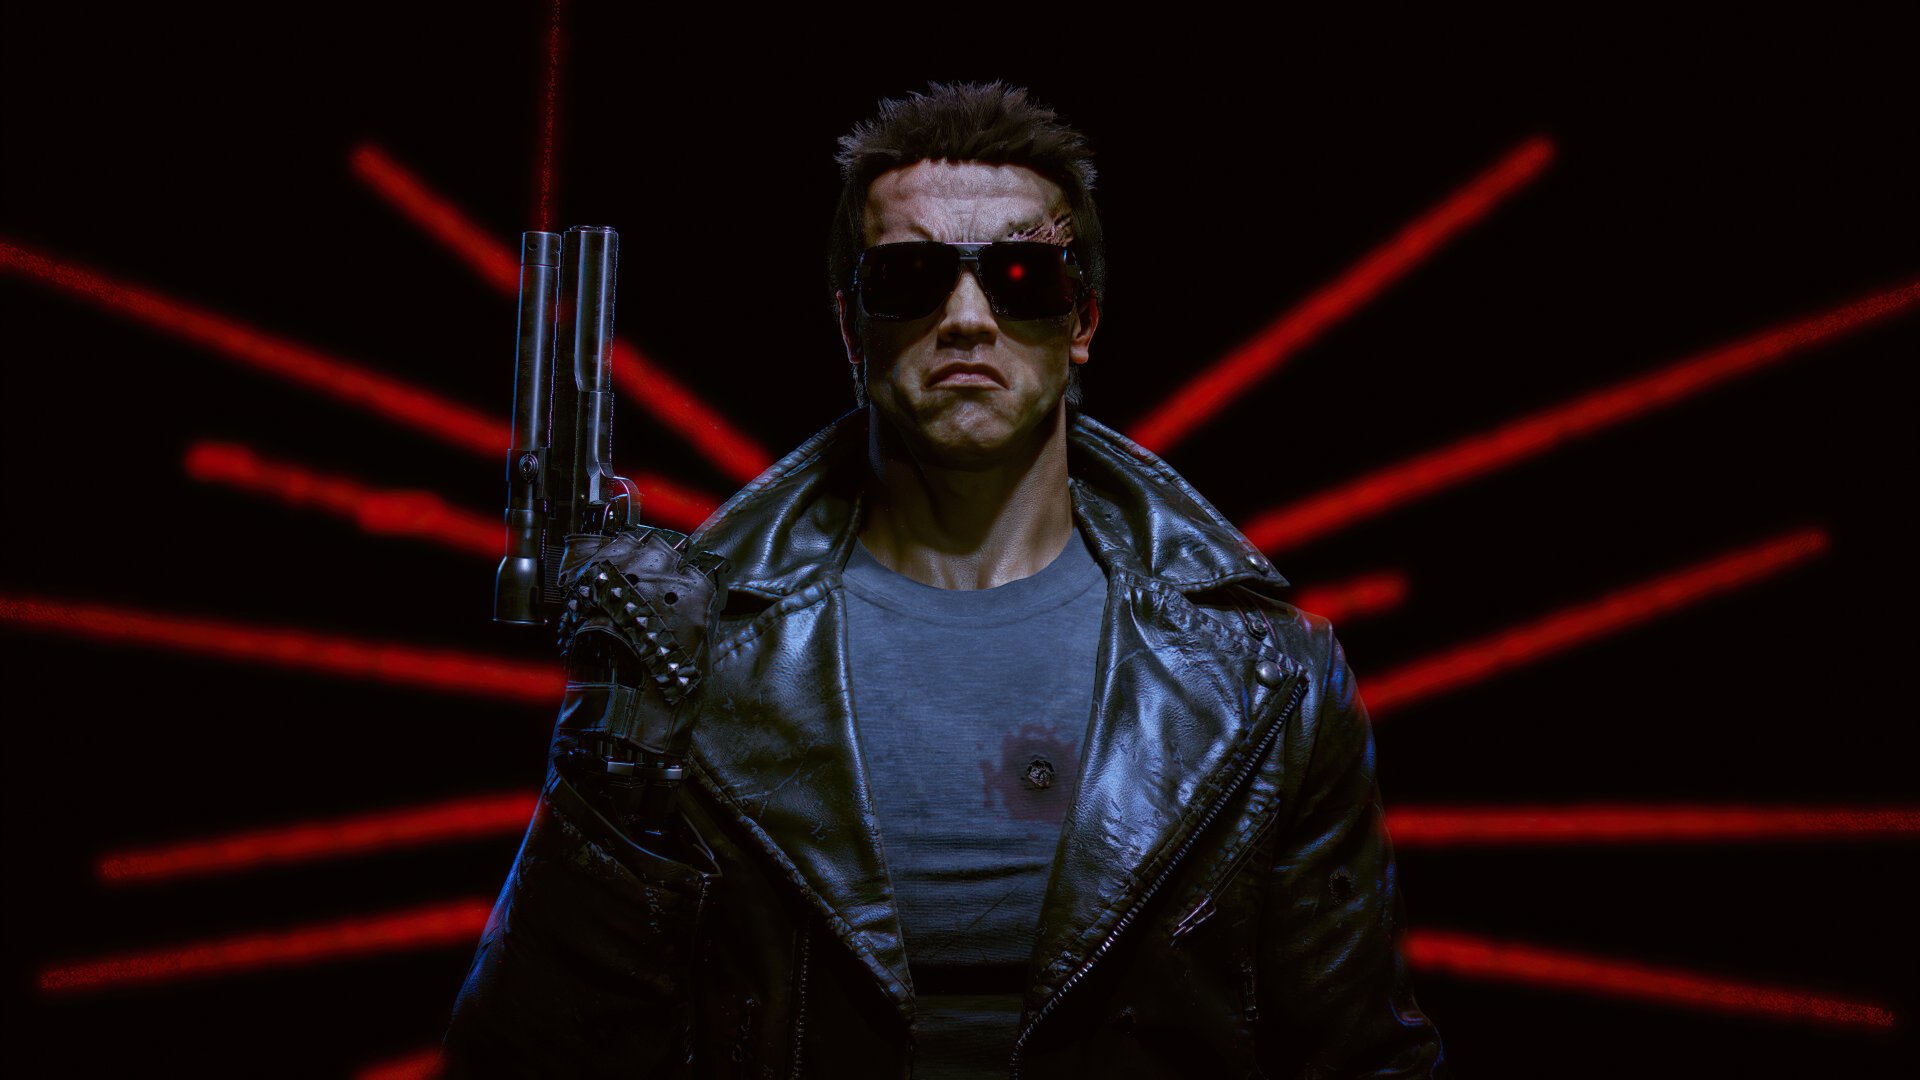 The Terminator Wallpaper 4k Ultra HD ID:9630